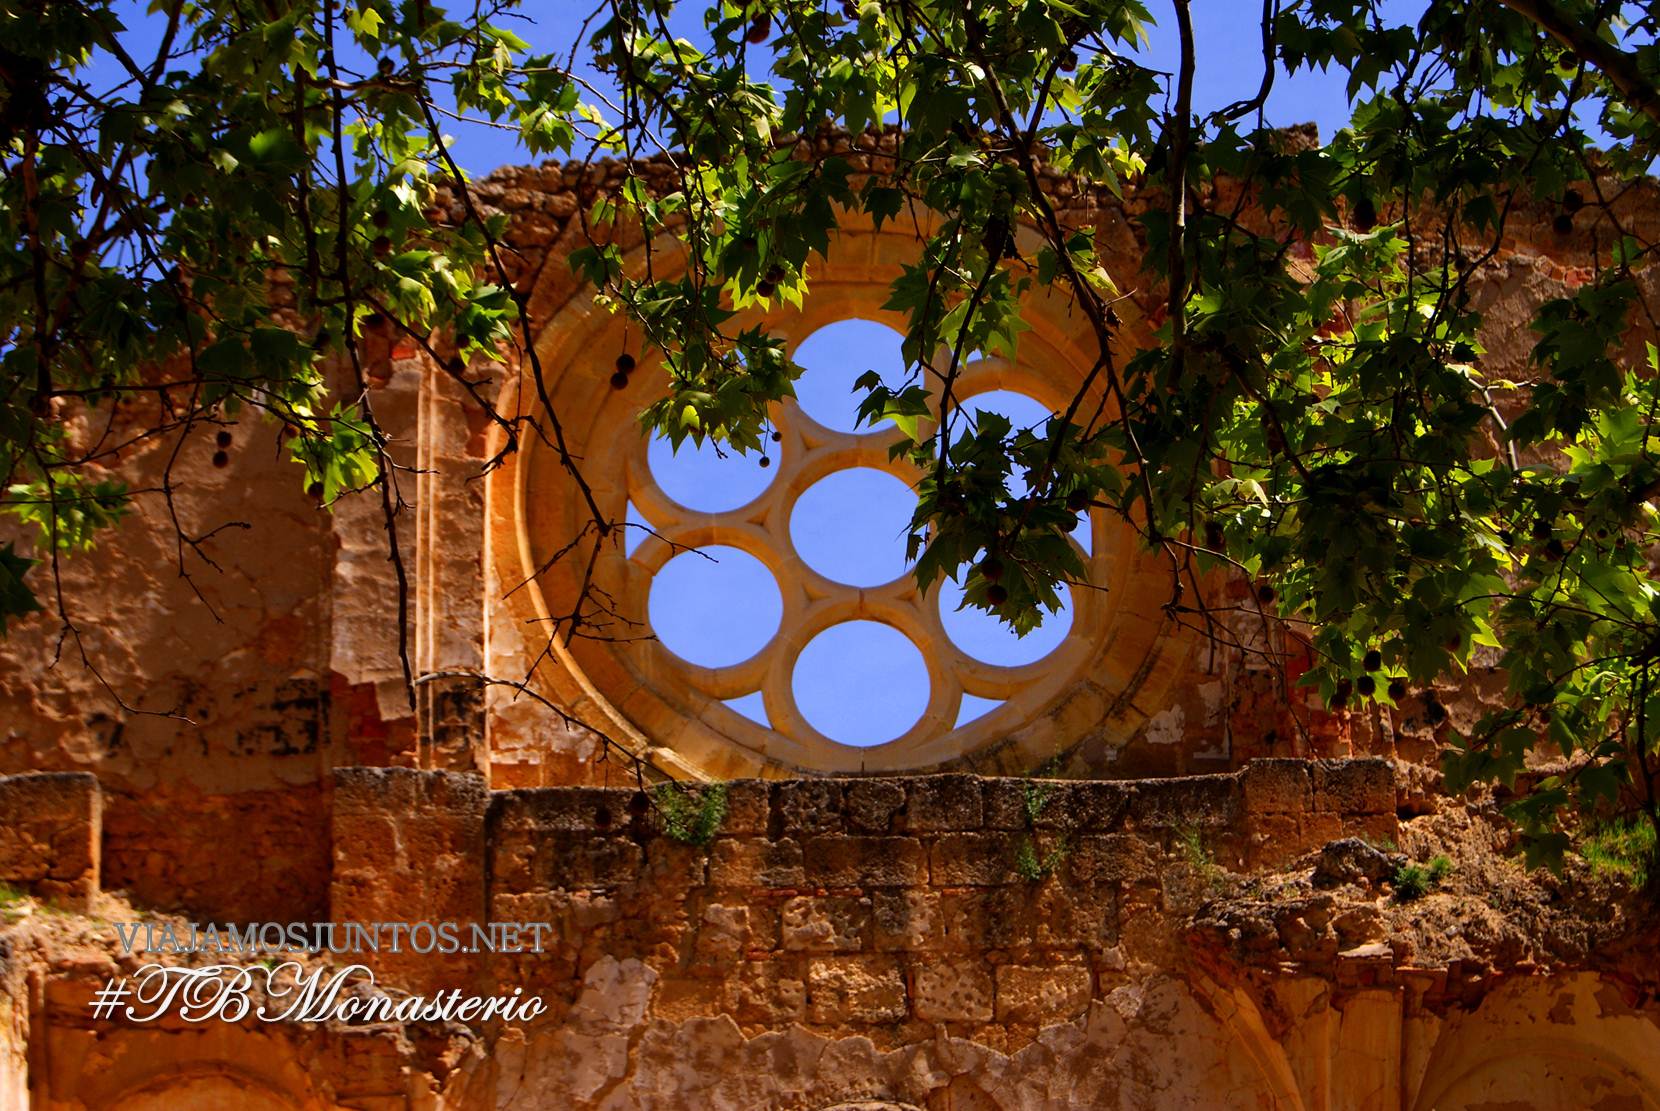 monasterio de piedra, zaragoza, nuevalos, madrid travel bloggers, barcelona travel bloggers, madtb, bcntb, cata de vinos, vinos divertidos, jose marco, curiosidades, leyendas